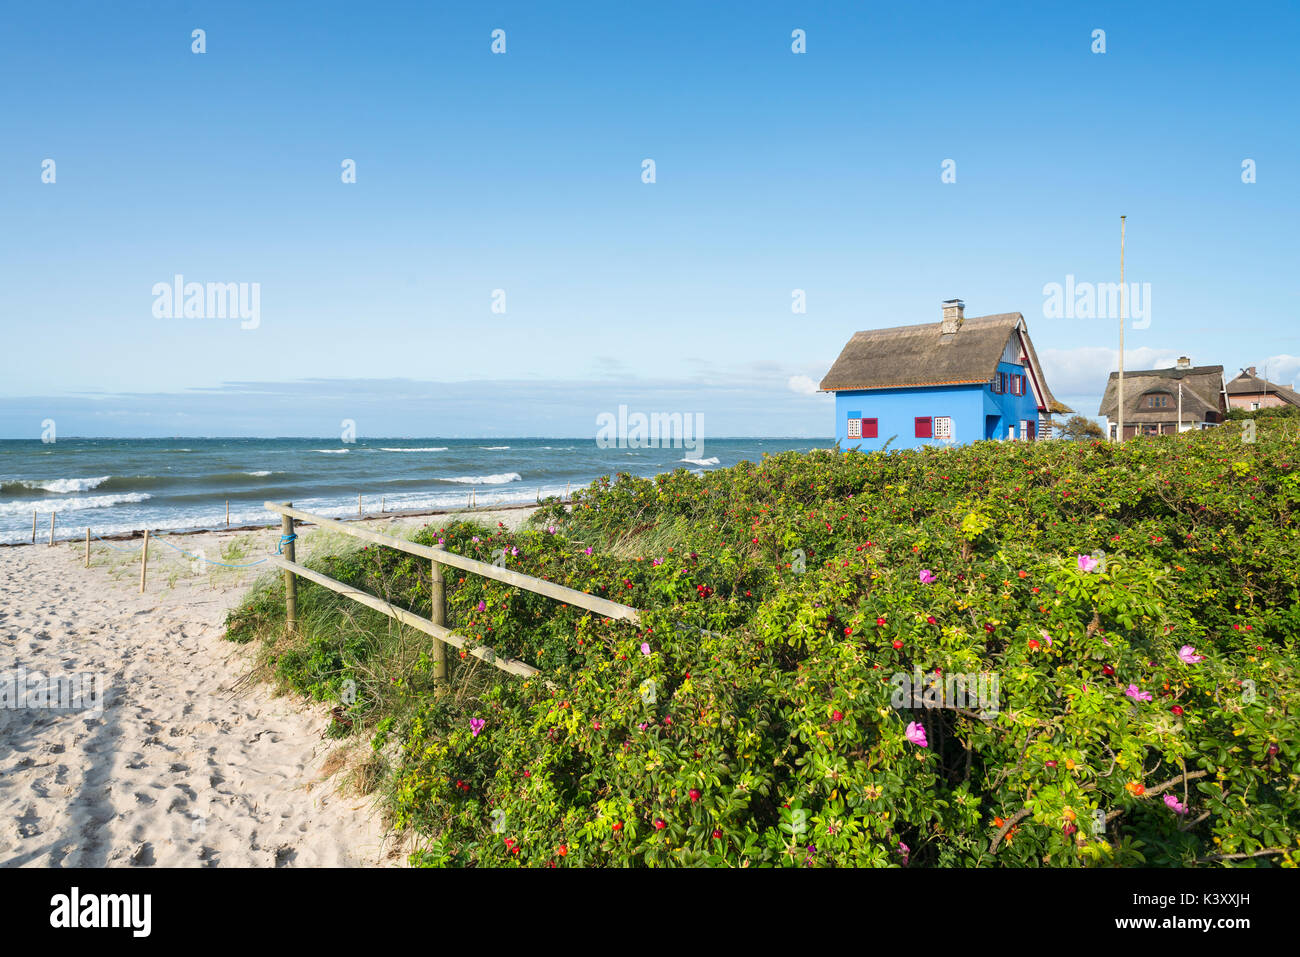 Storica spiaggia blu casa con tetto di paglia e cane cespugli di rose nella riserva naturale sulla penisola di graswarder a heiligenhafen, Germania Foto Stock